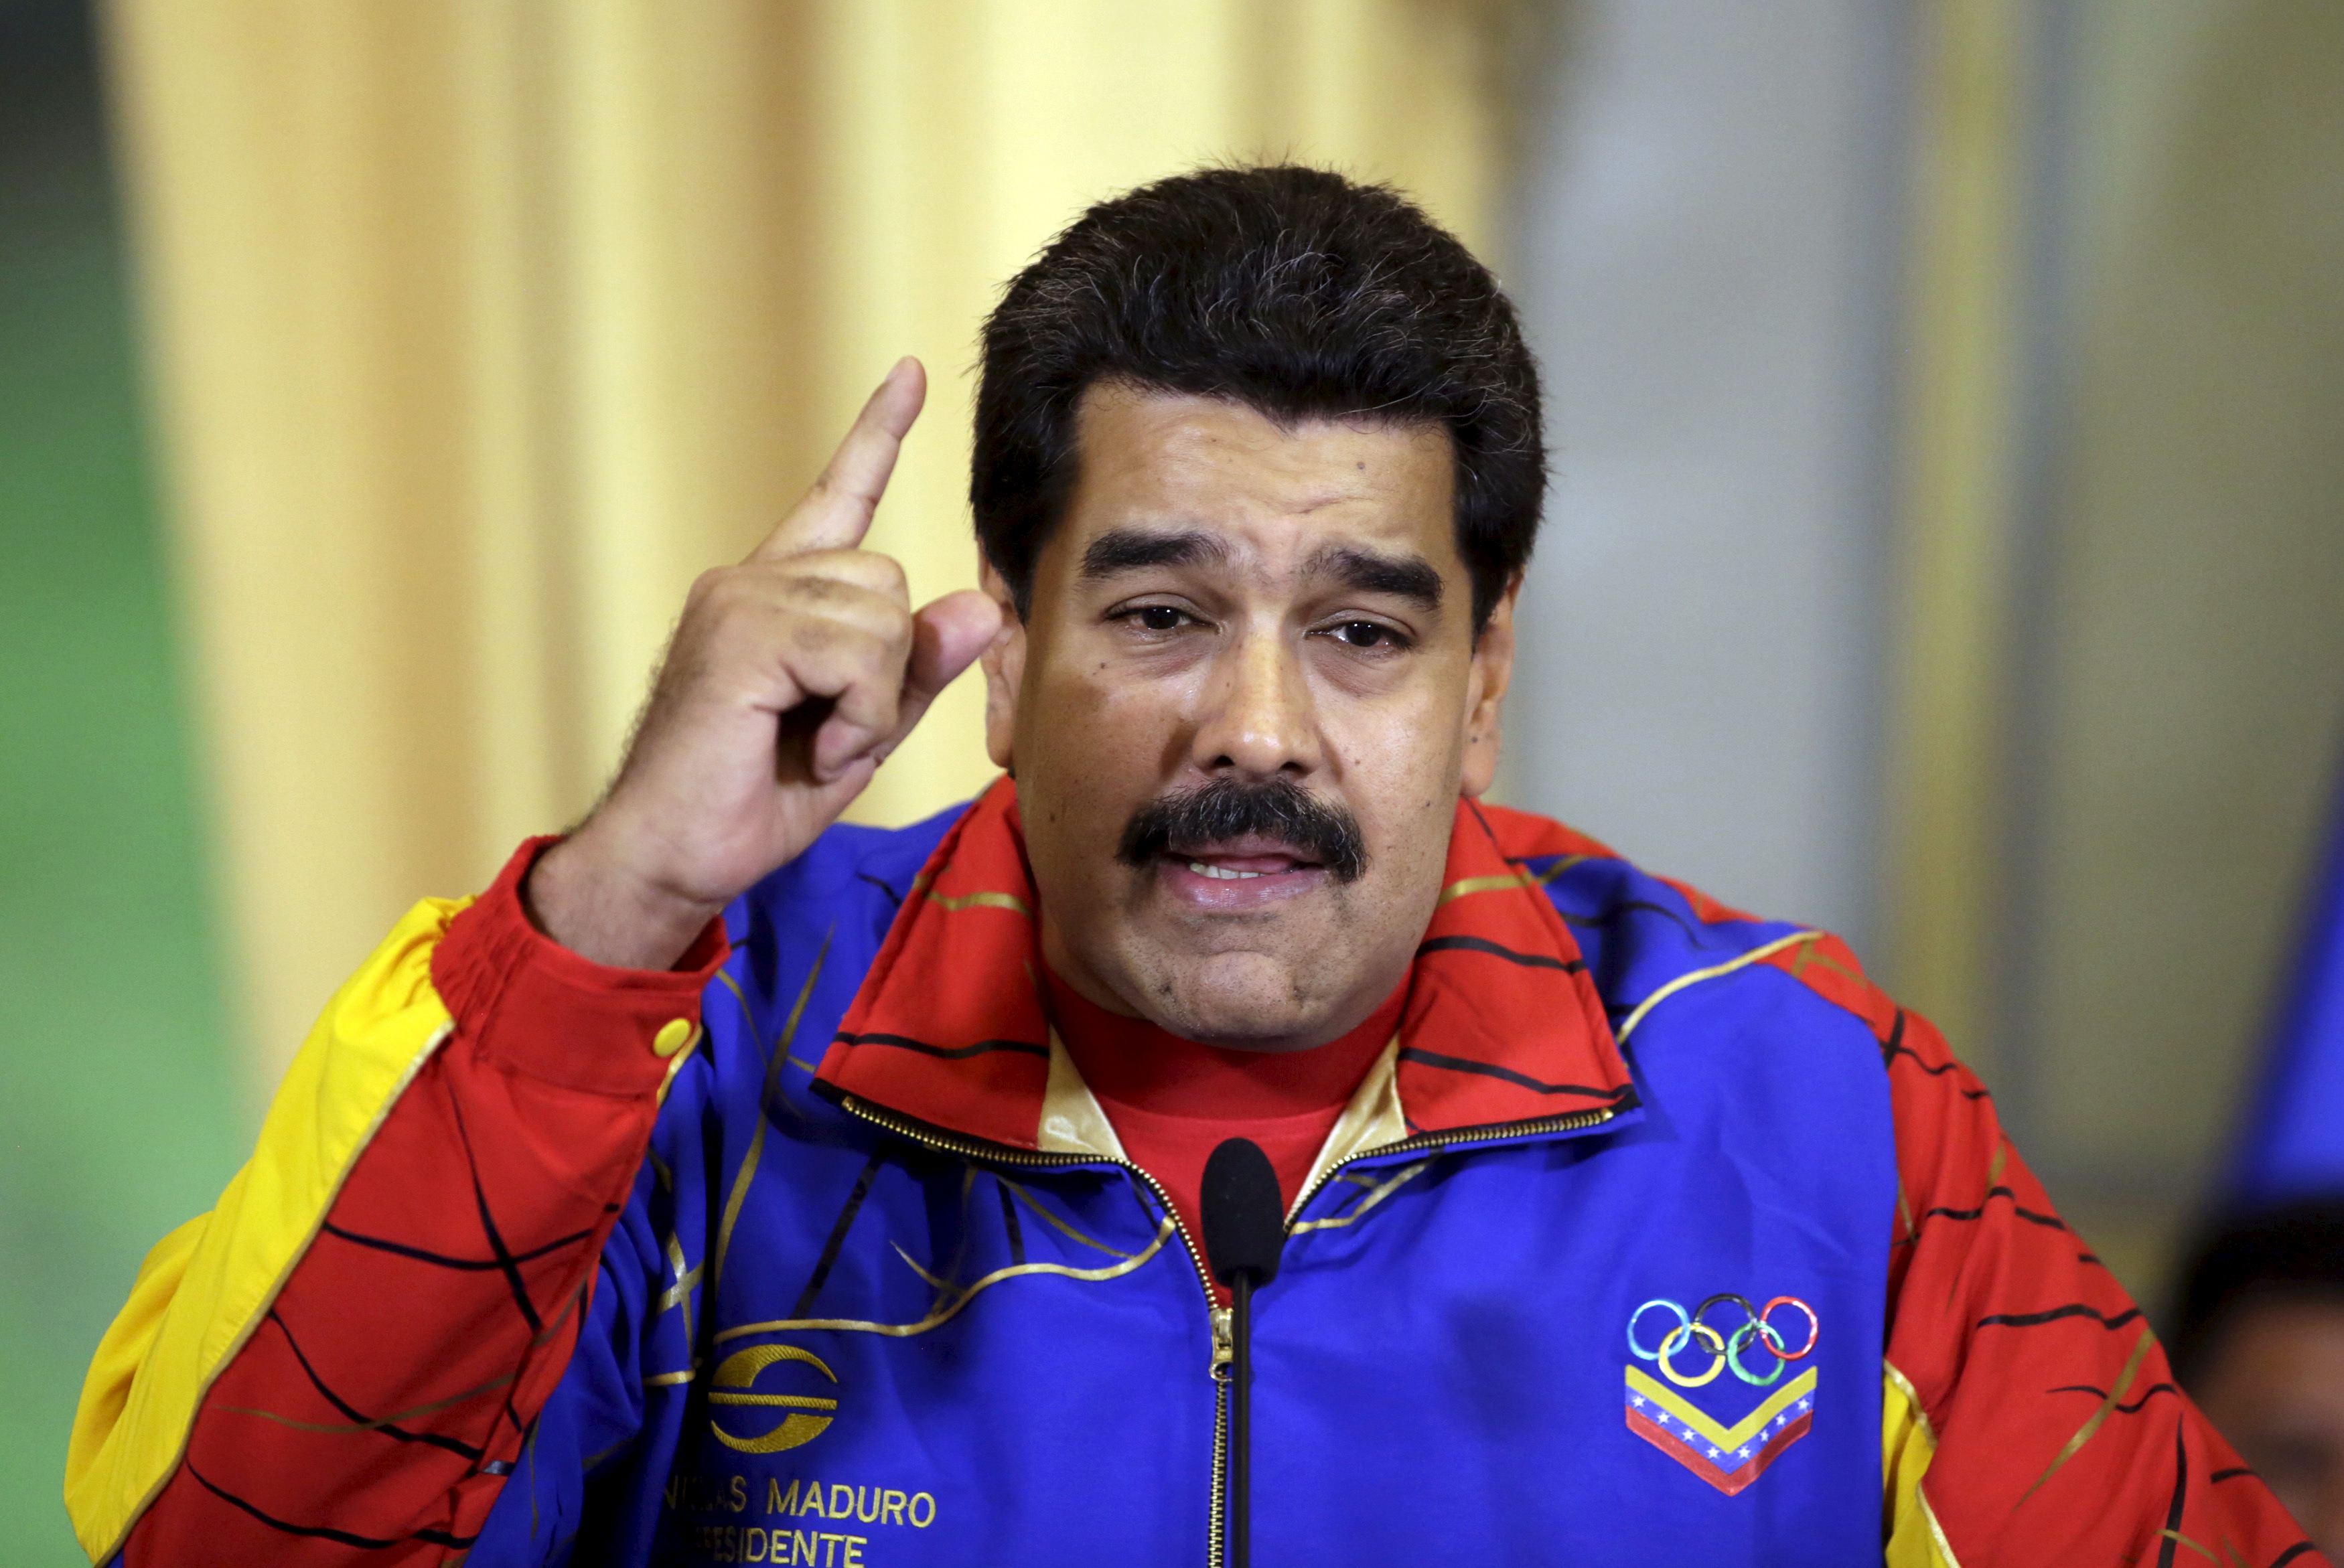 ¡Increíble! Esta es la cantidad de horas que Maduro aparece en “el canal de todos los venezolanos”